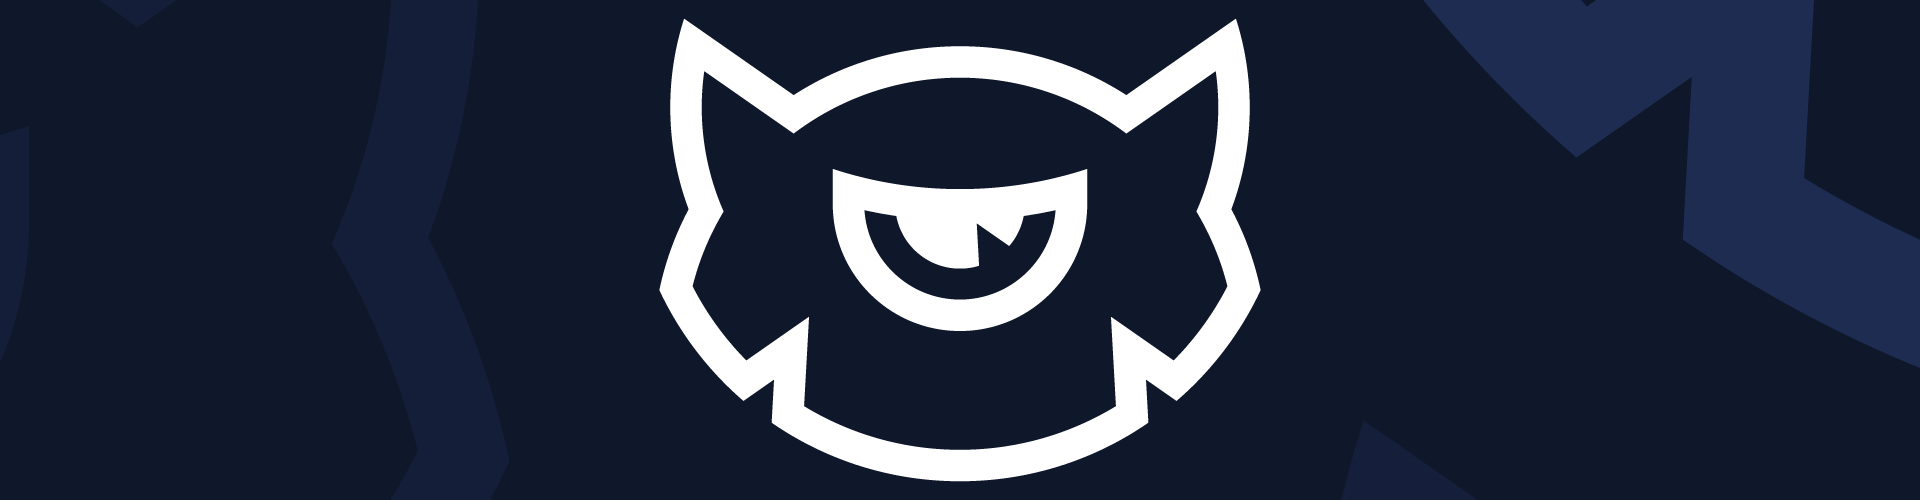 Monster Awards logo